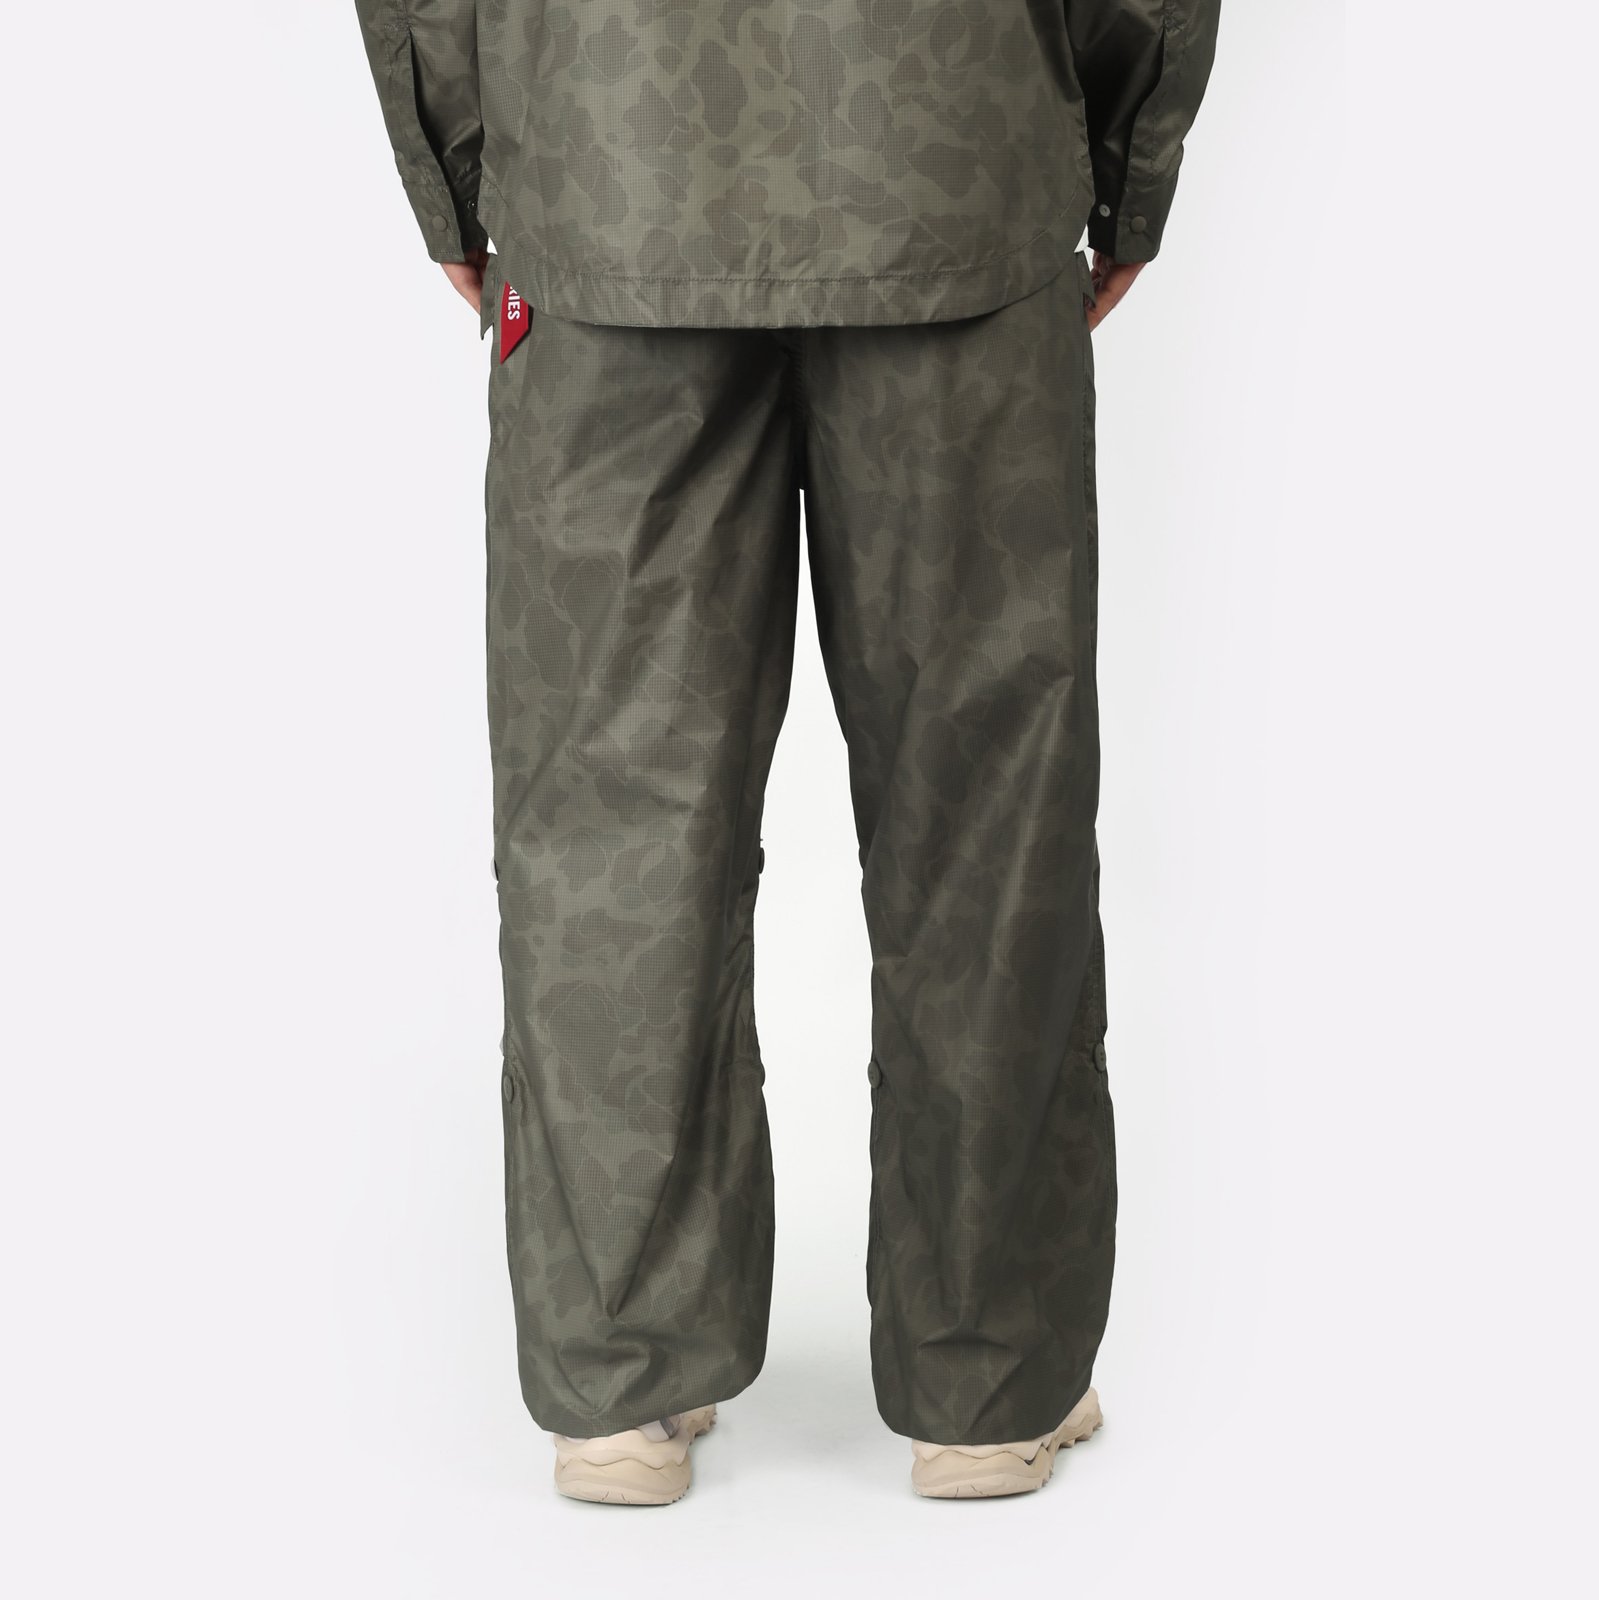 Мужские брюки Alpha Industries Ripstop Parachute Pants (UBU54001C1-OG-107-green)  - цена, описание, фото 2